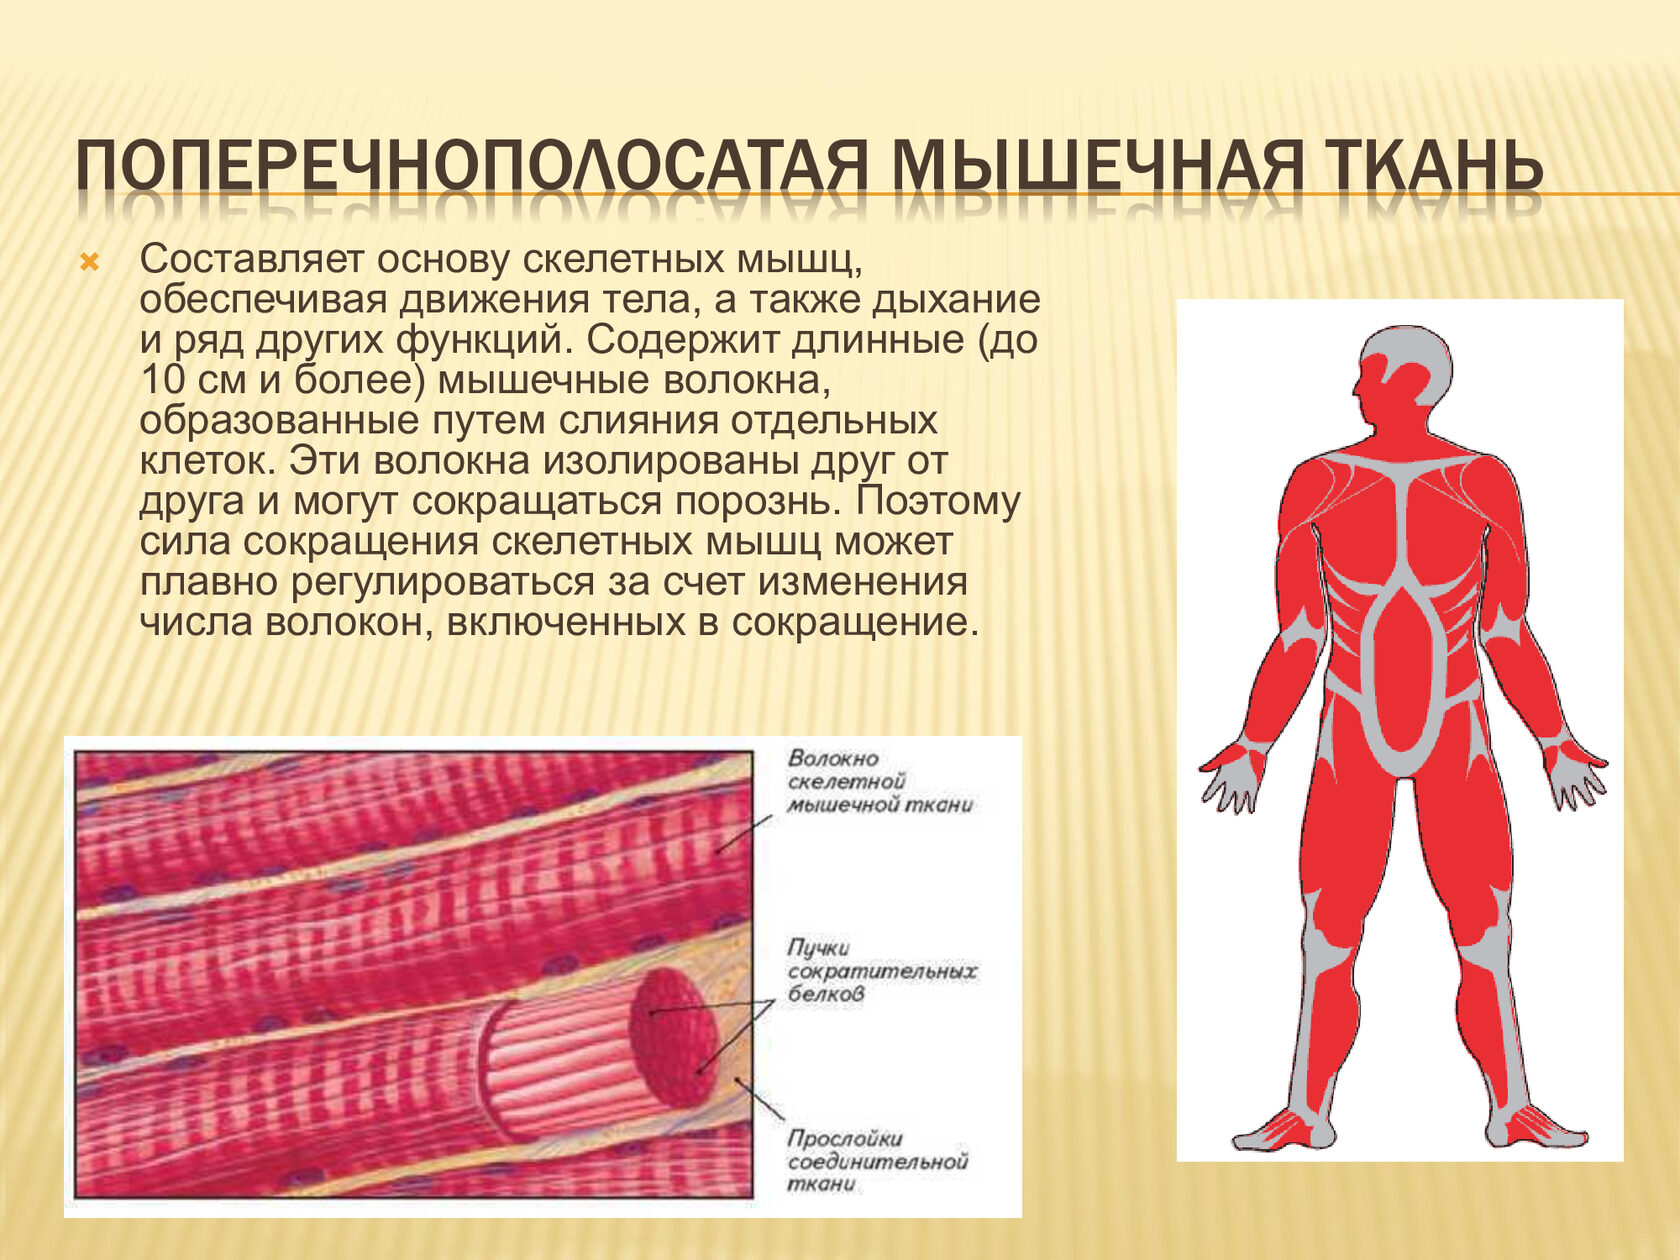 Какая ткань называется мышечной